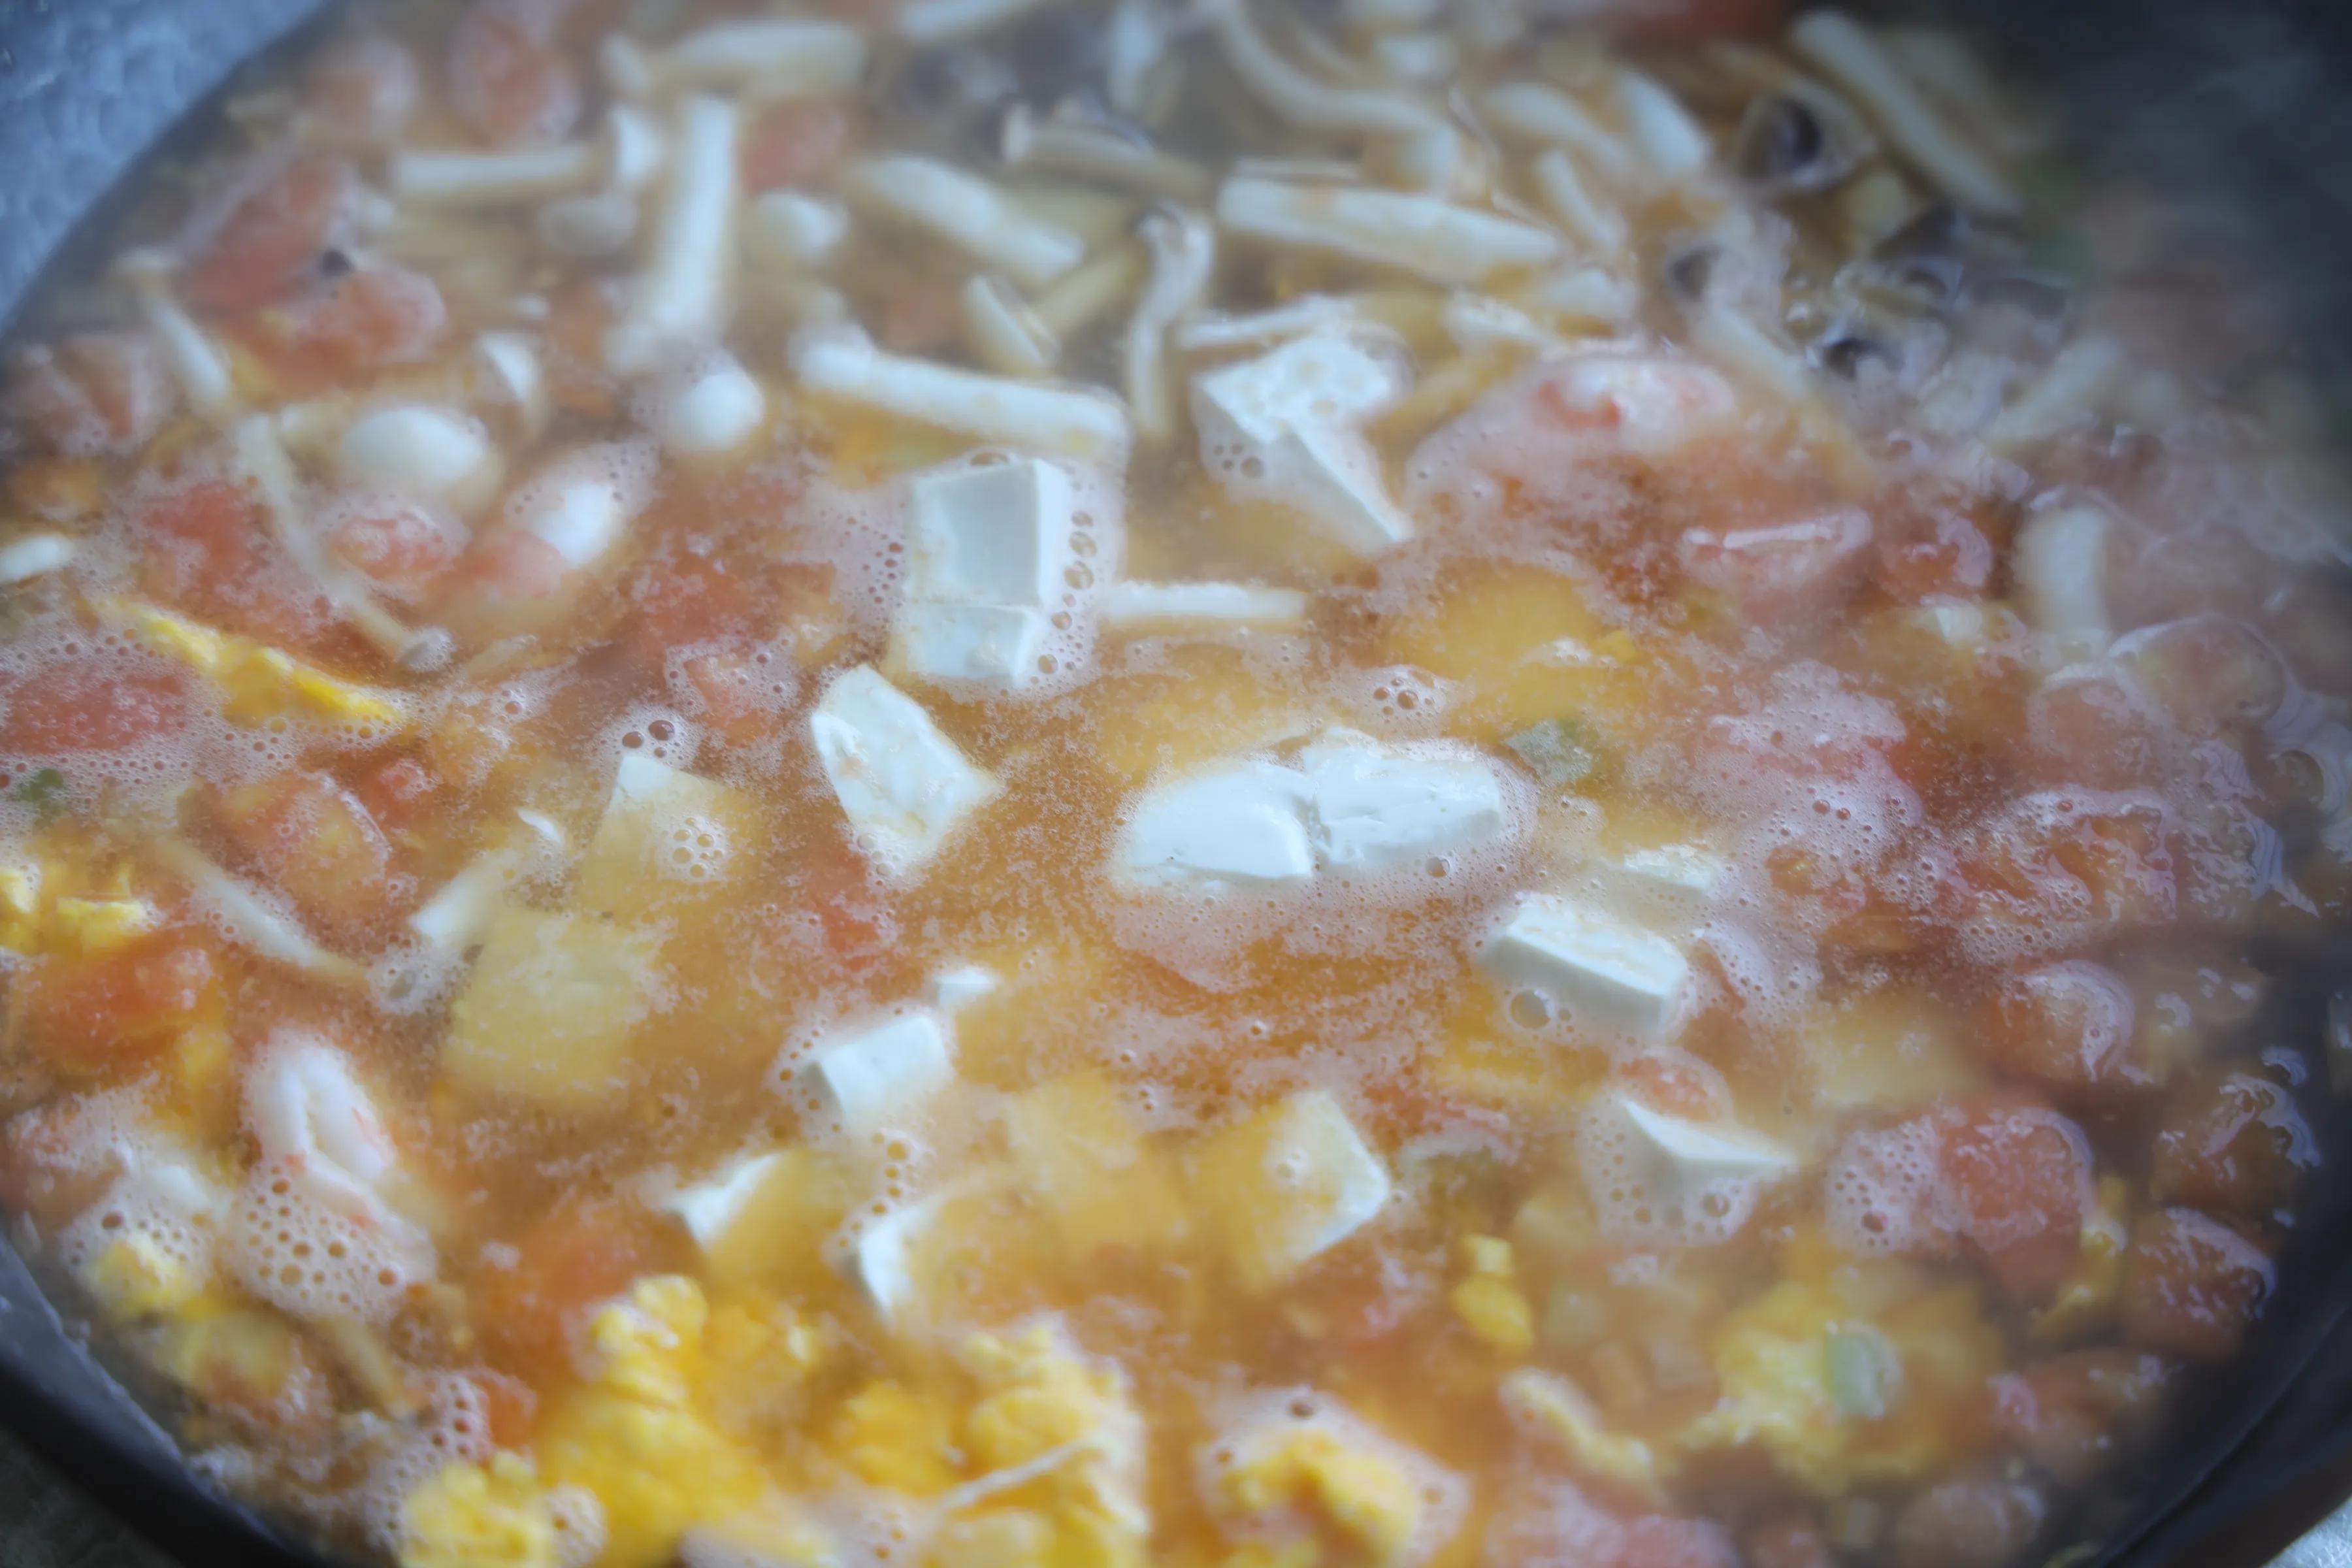 天气凉了，来一碗超鲜美的菌菇汤，全身暖呼呼不怕冷，做法超简单